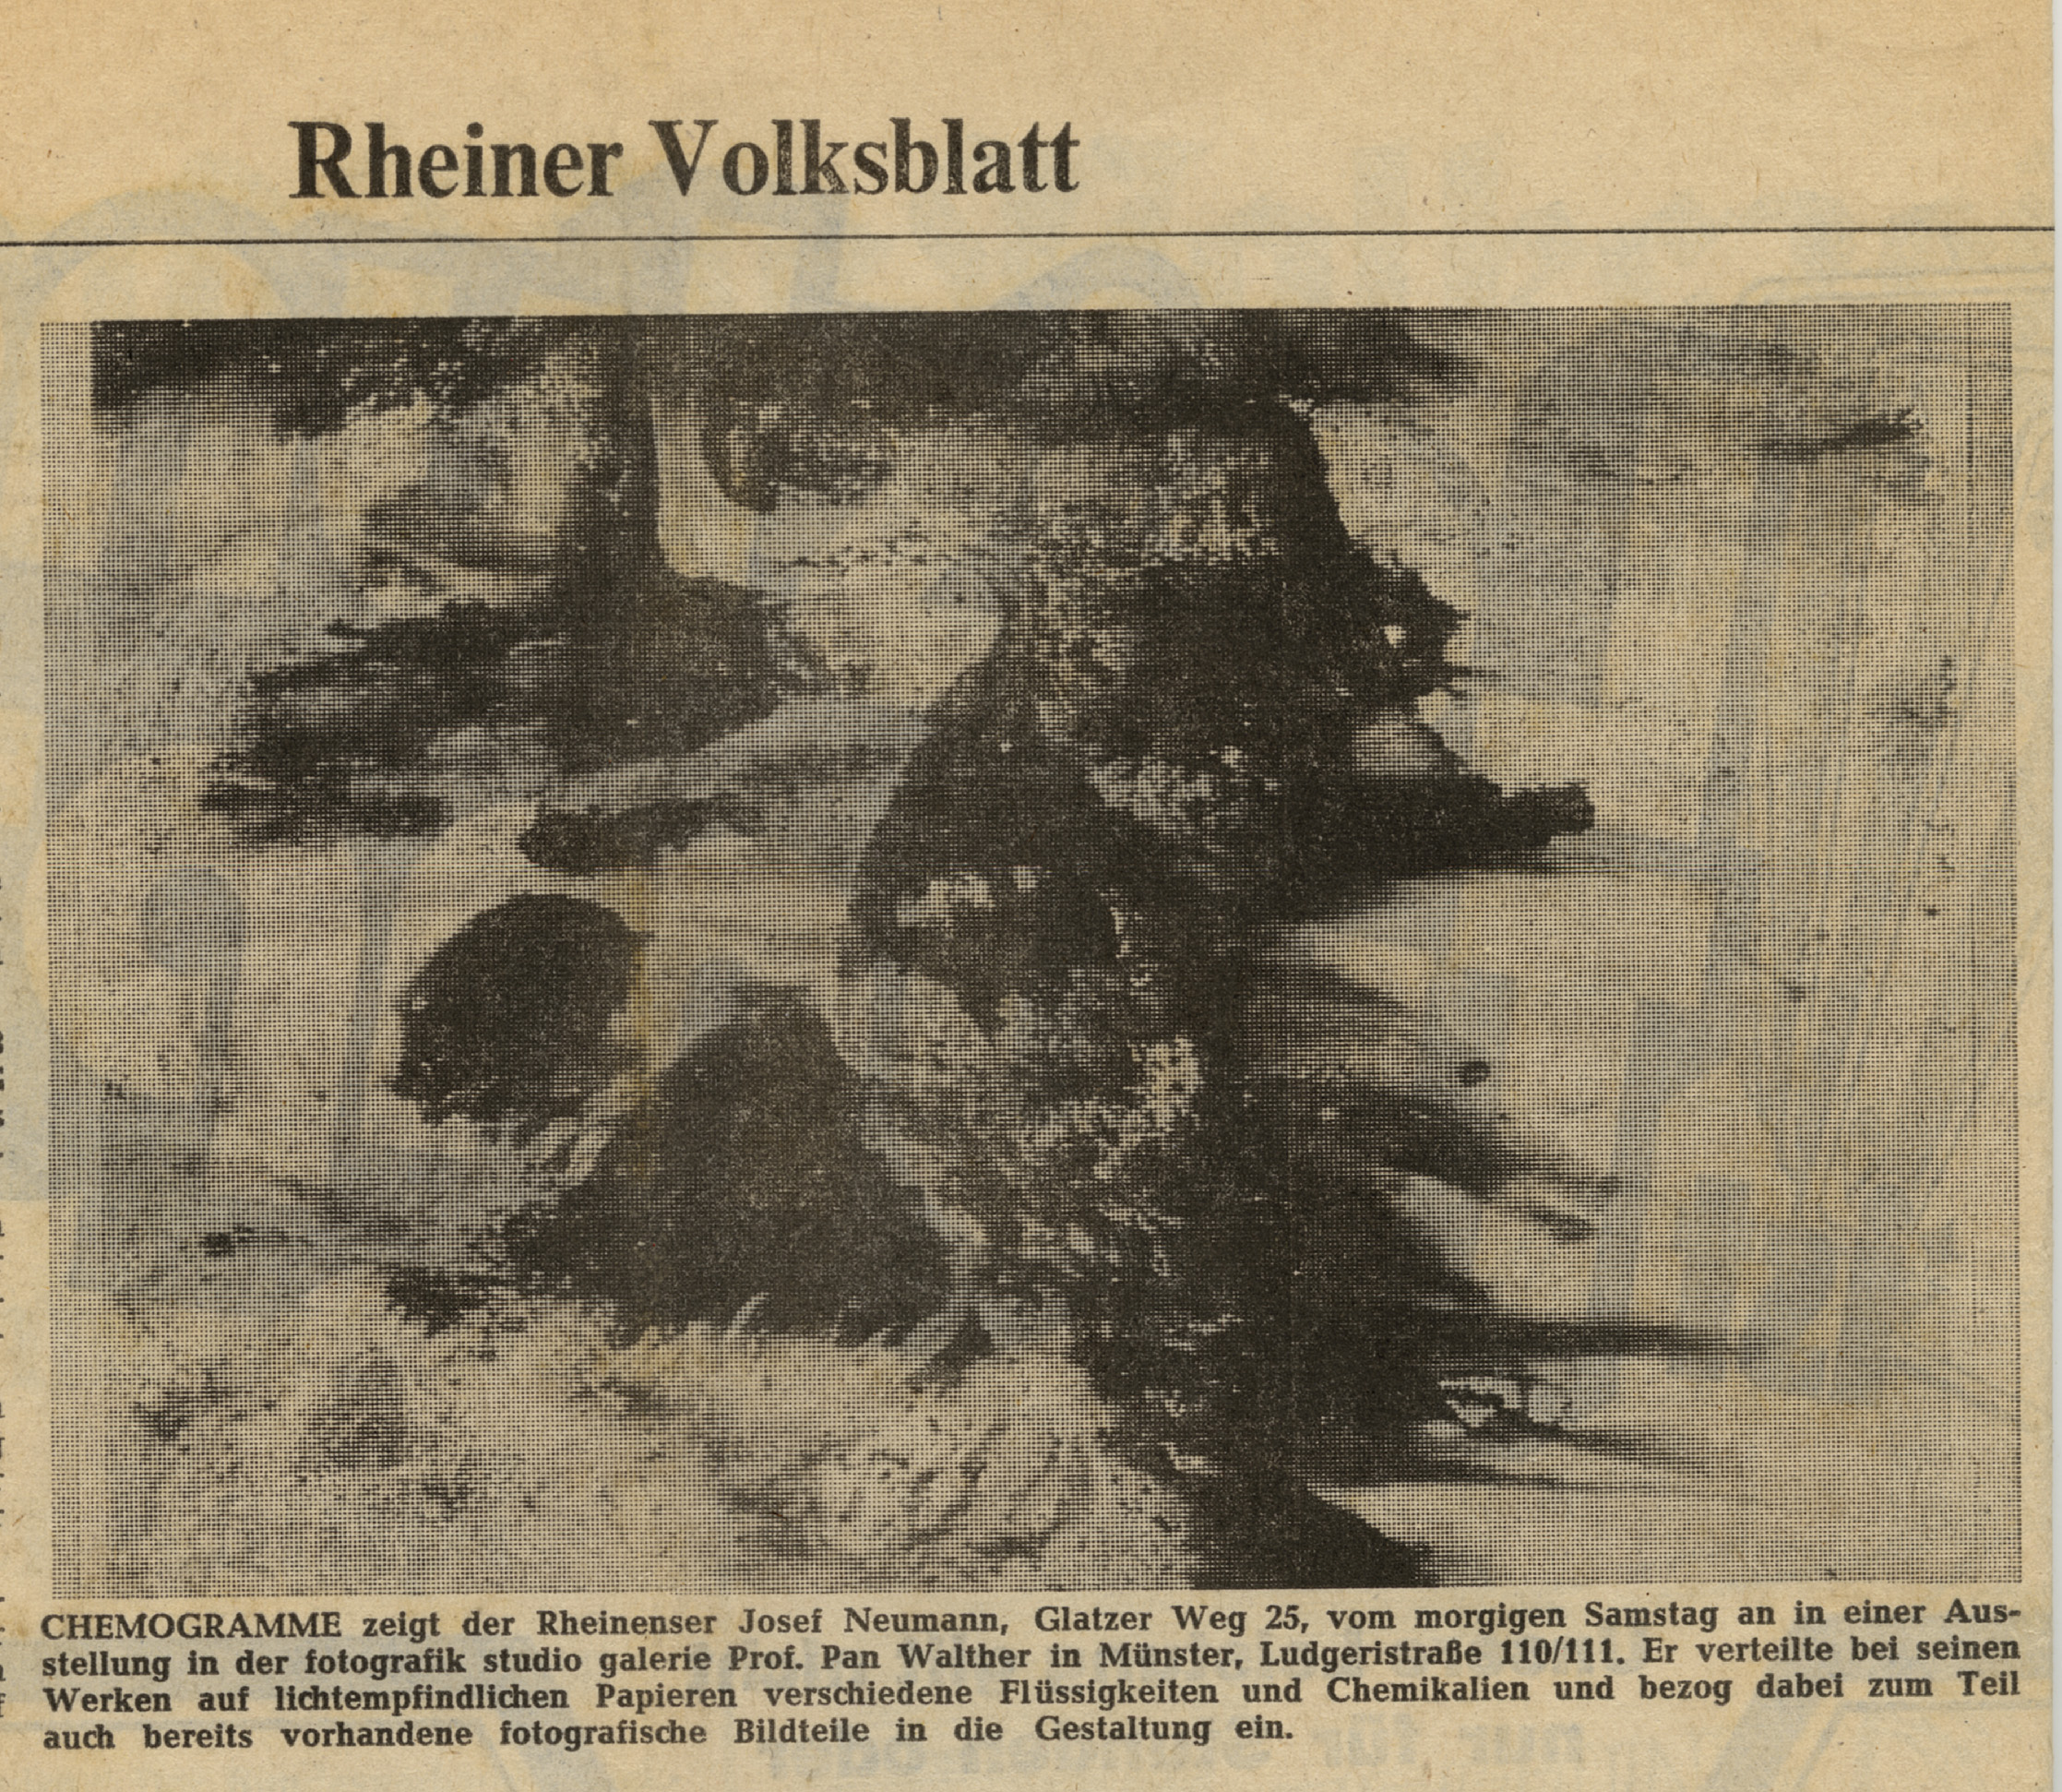 Münsterländische Volkszeitung , 7th May, 1976, Chemogramme in der "fotografik studio galerie Prof.Pan Walther" in Münster